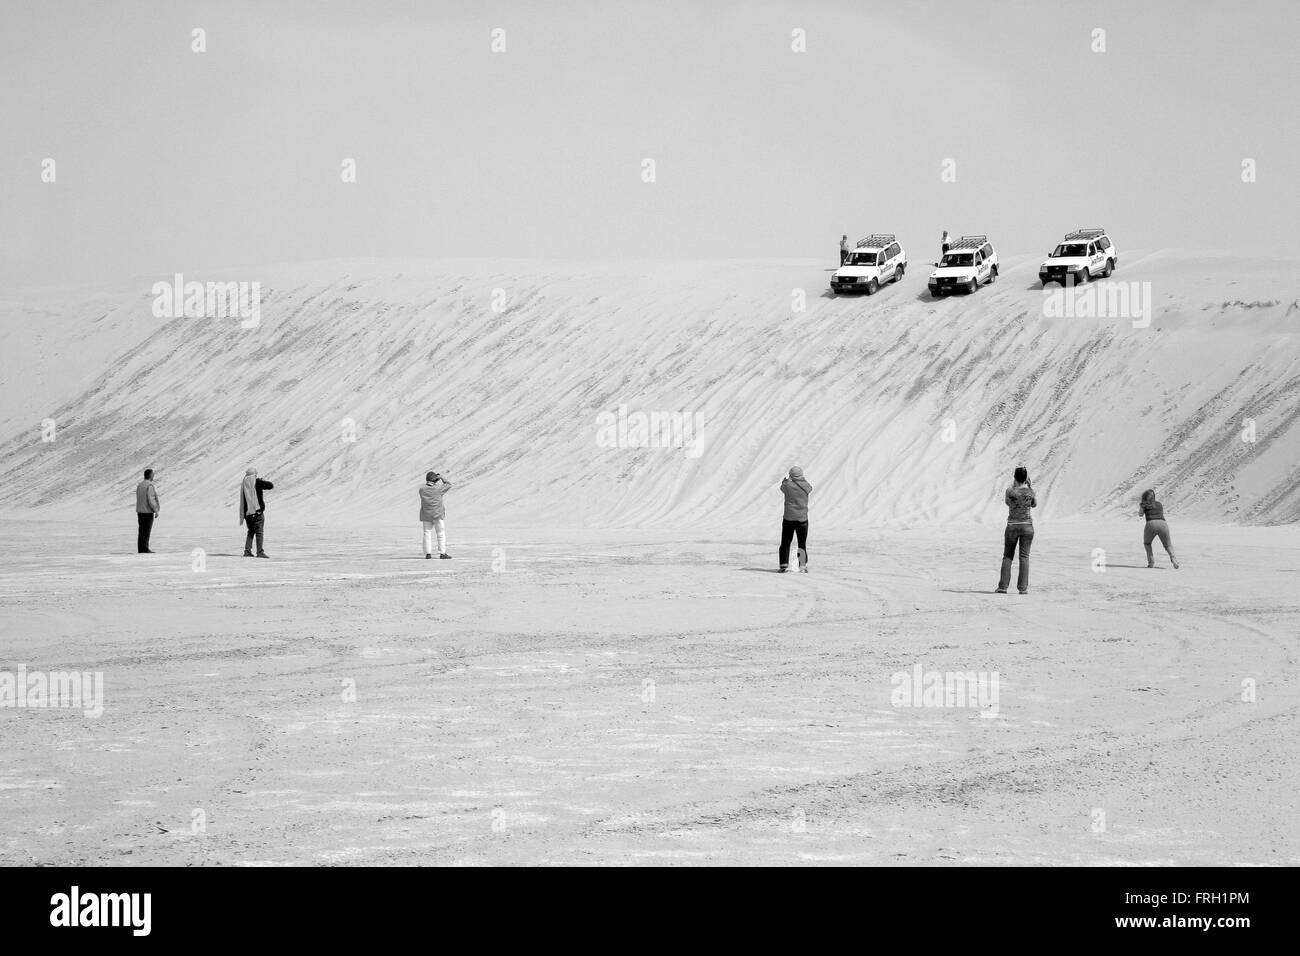 Sei turisti fotografare allineati tre 4 x 4 vetture voce verso il basso di una duna di sabbia al deserto del Sahara, in bianco e nero, Tuinisia Foto Stock